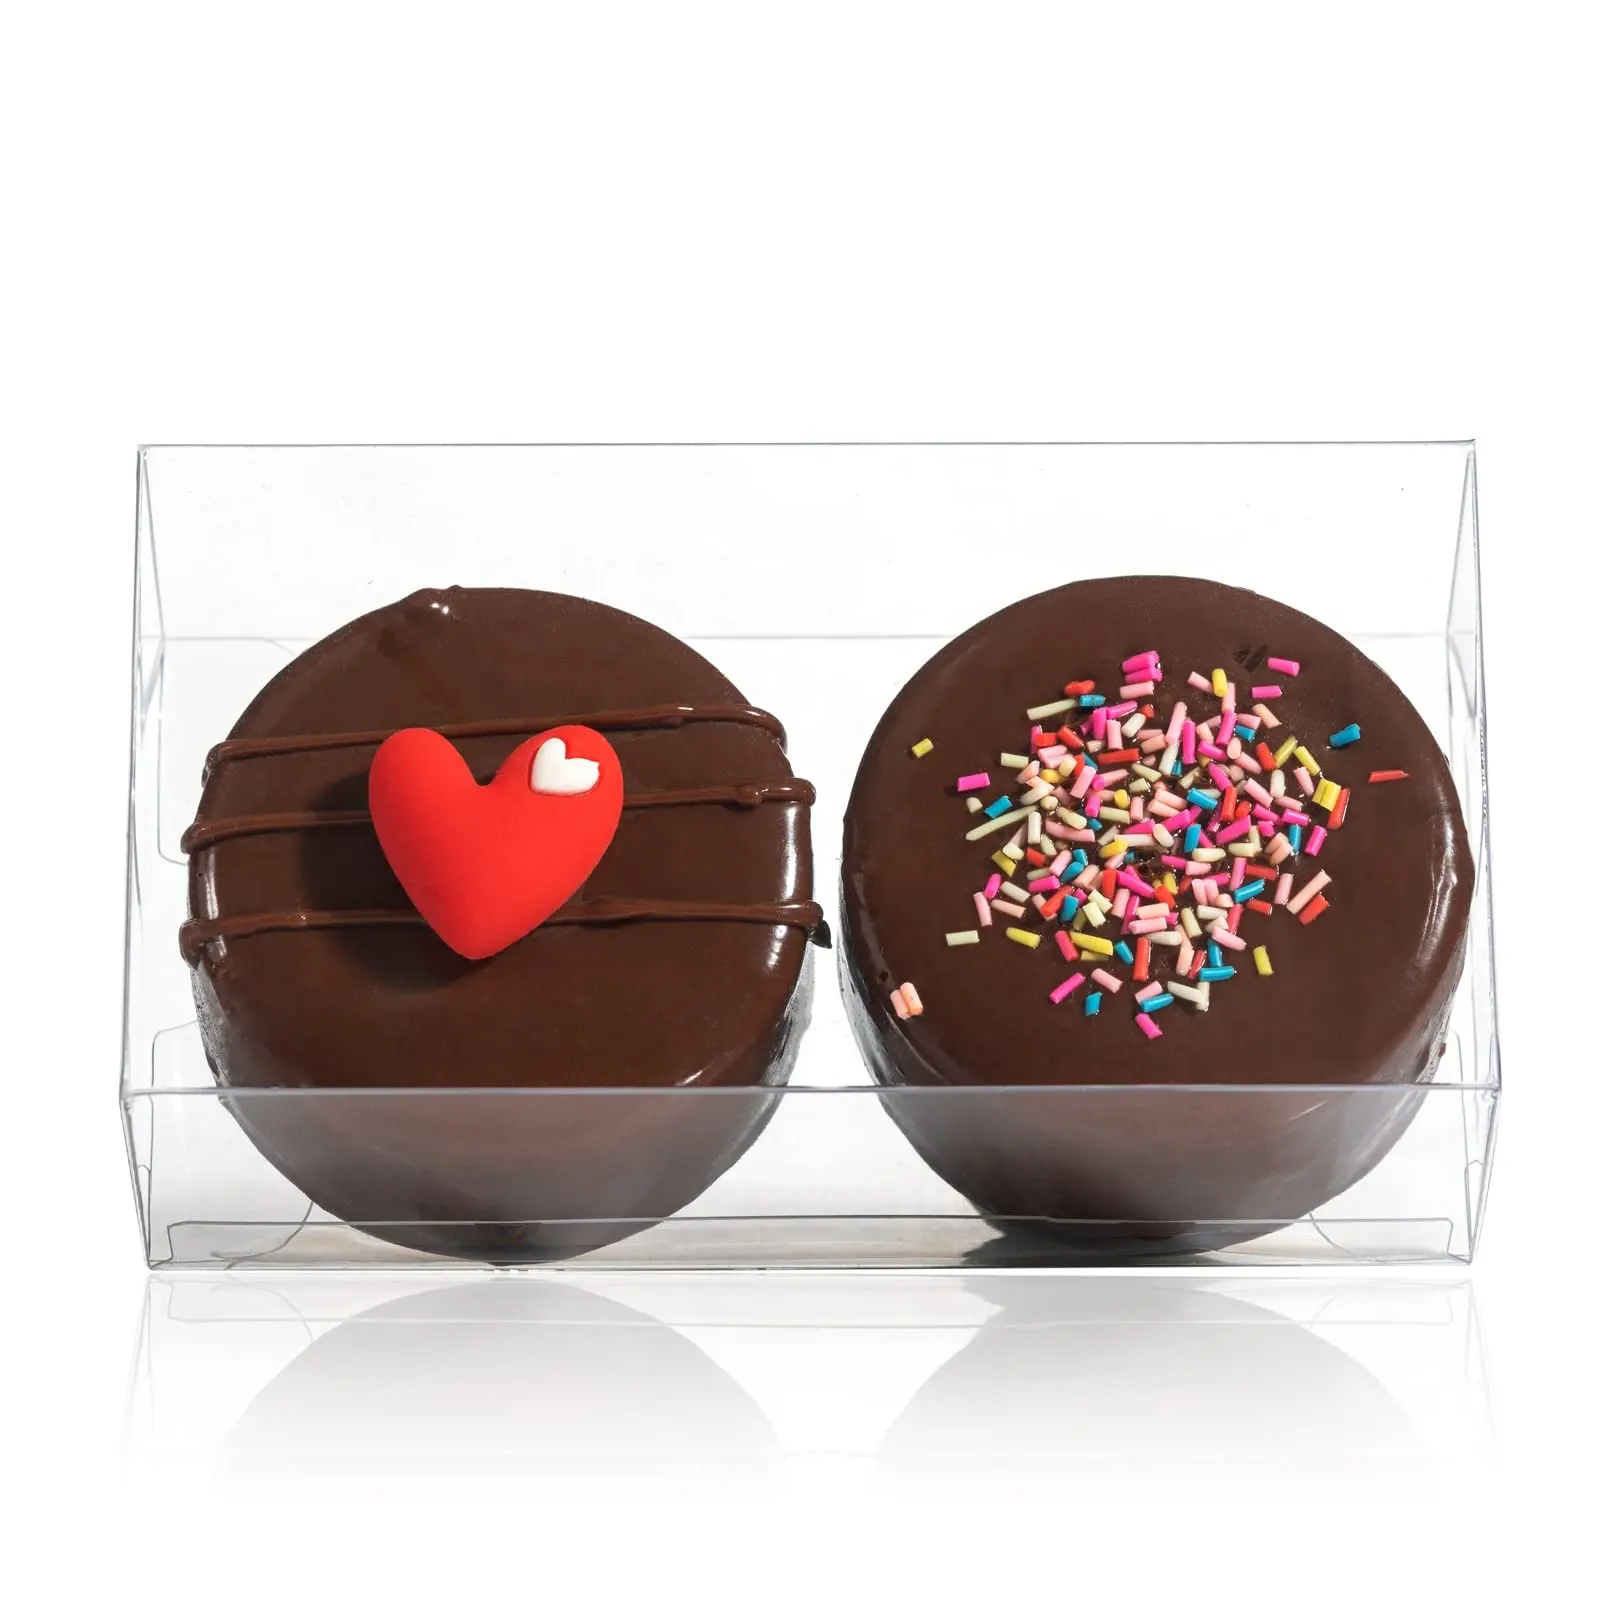 XJH boîte à macarons transparente avec Logo imprimé, emballage cadeau pour biscuits, macarons, chocolat, boîte d'emballage